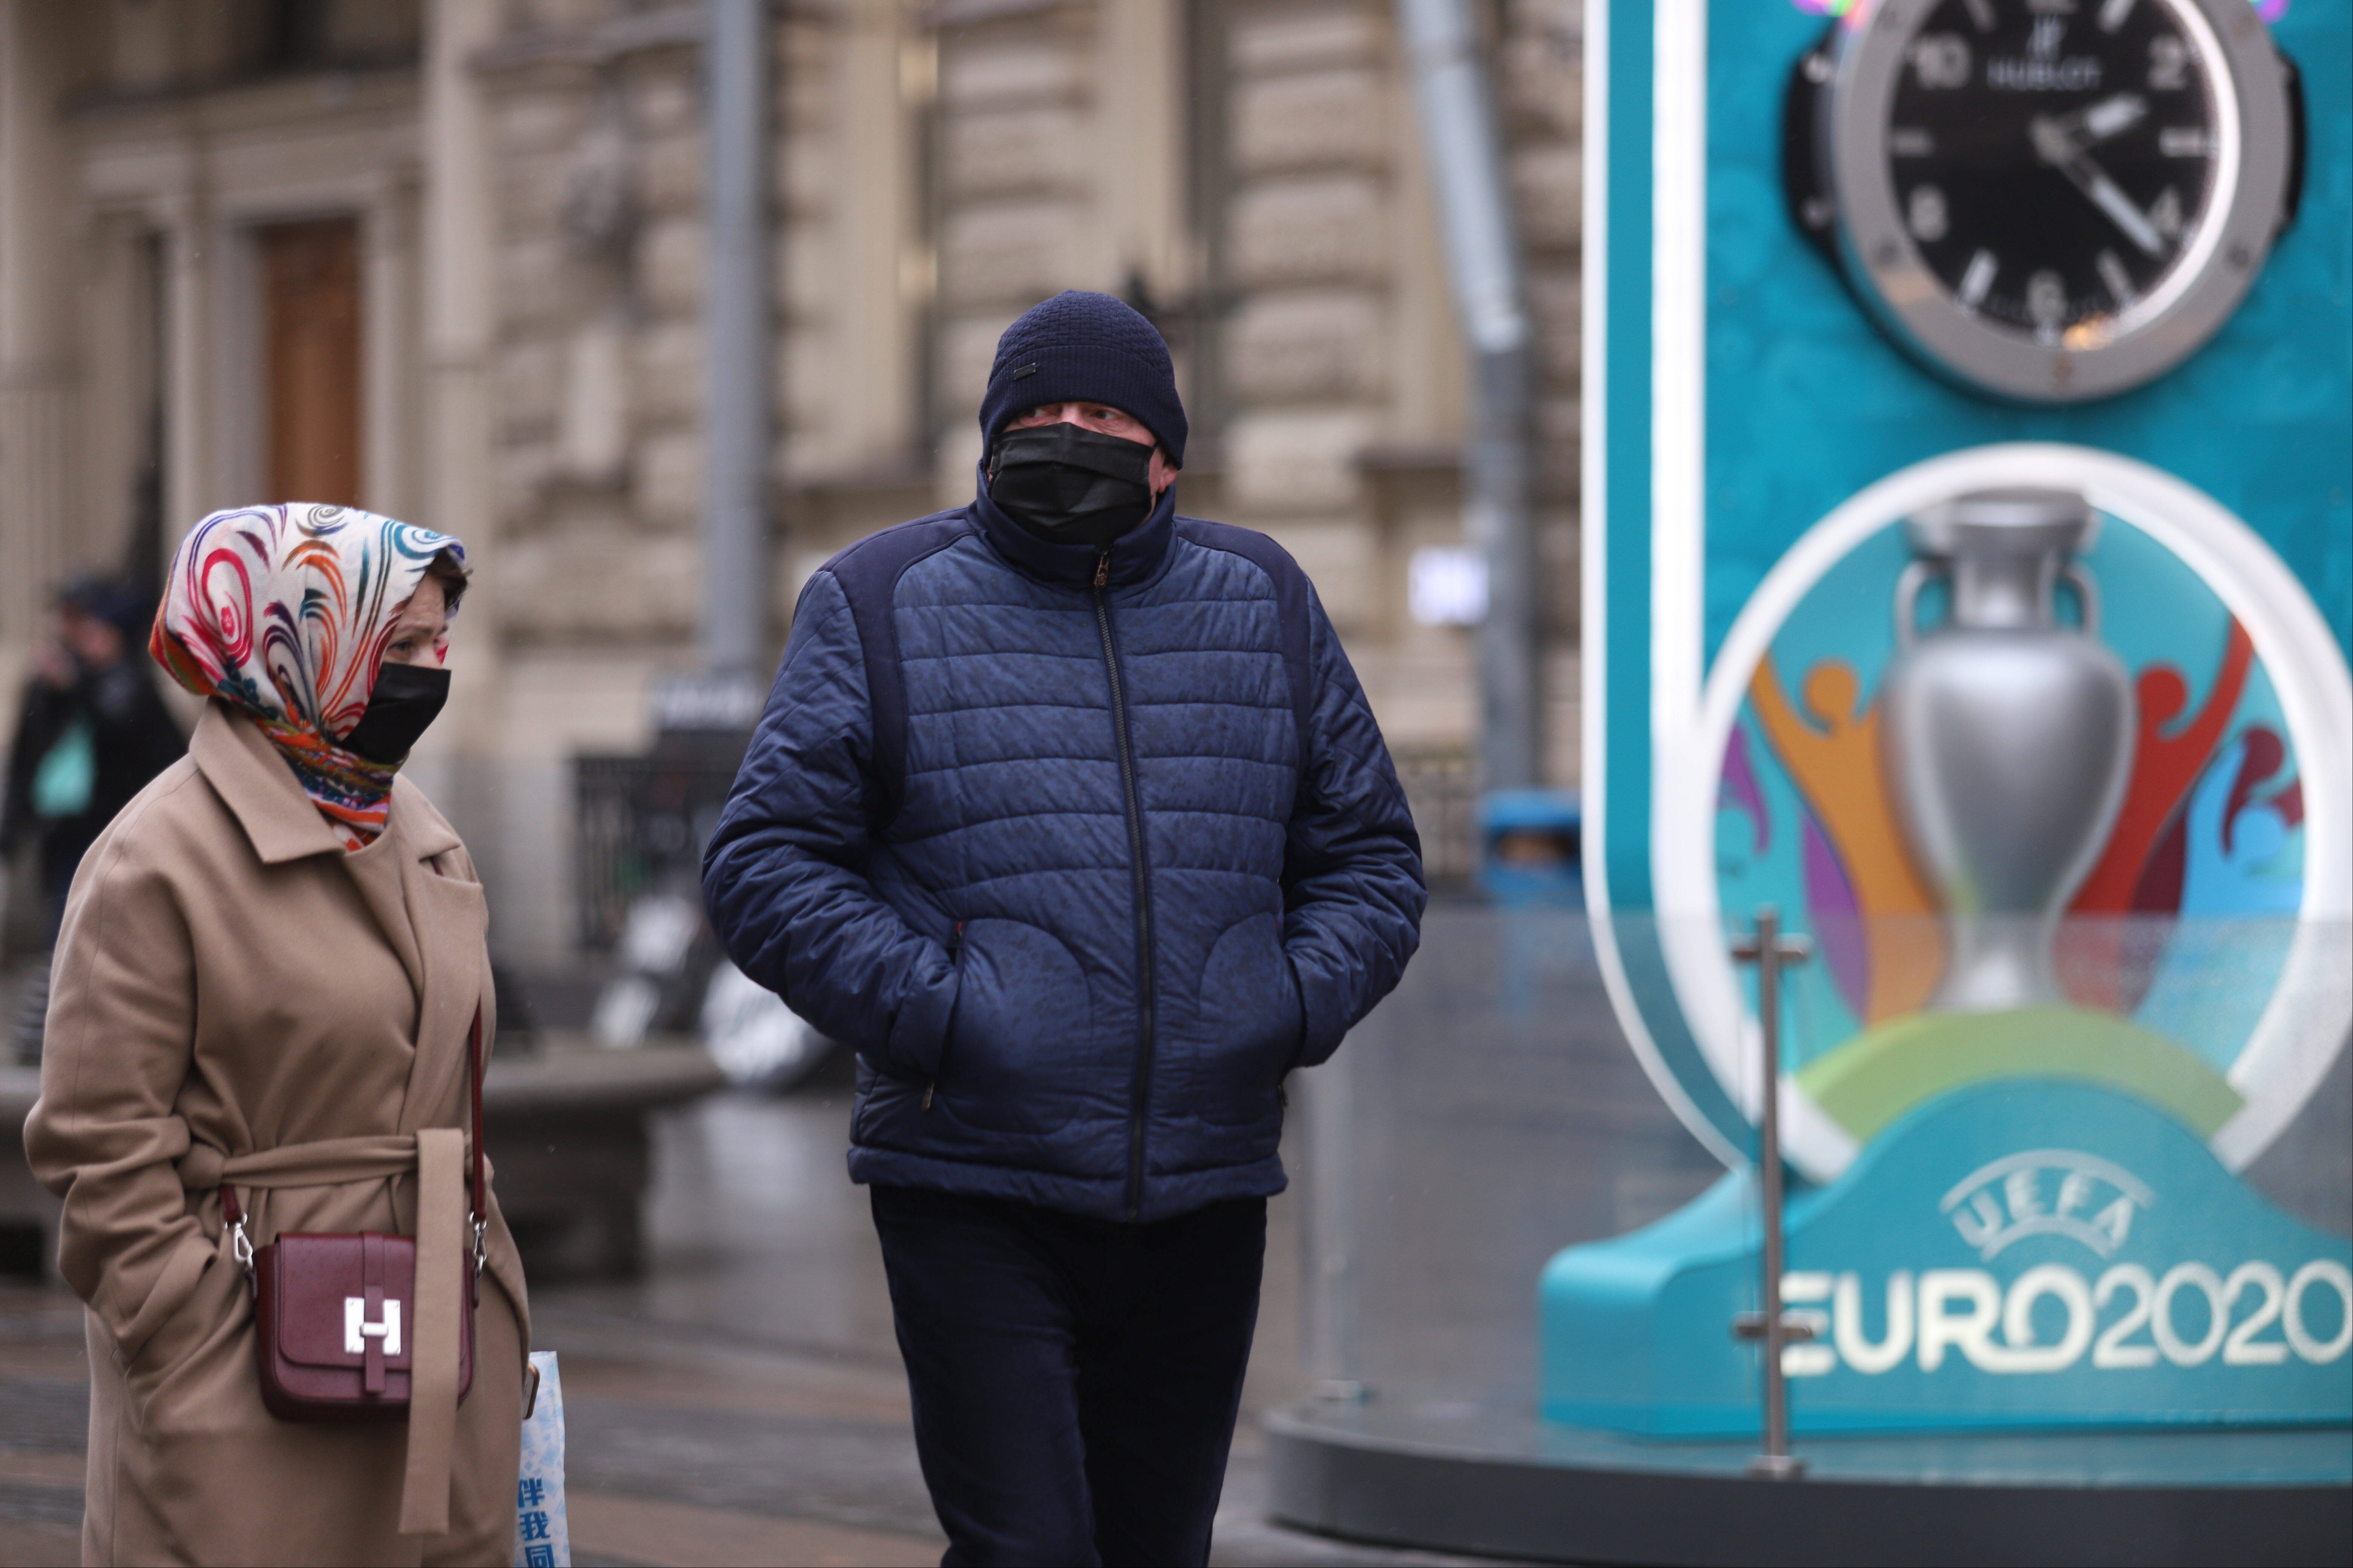 Menschen mit Mund-Nasen-Schutz an einem EM-Logo in Sankt Petersburg